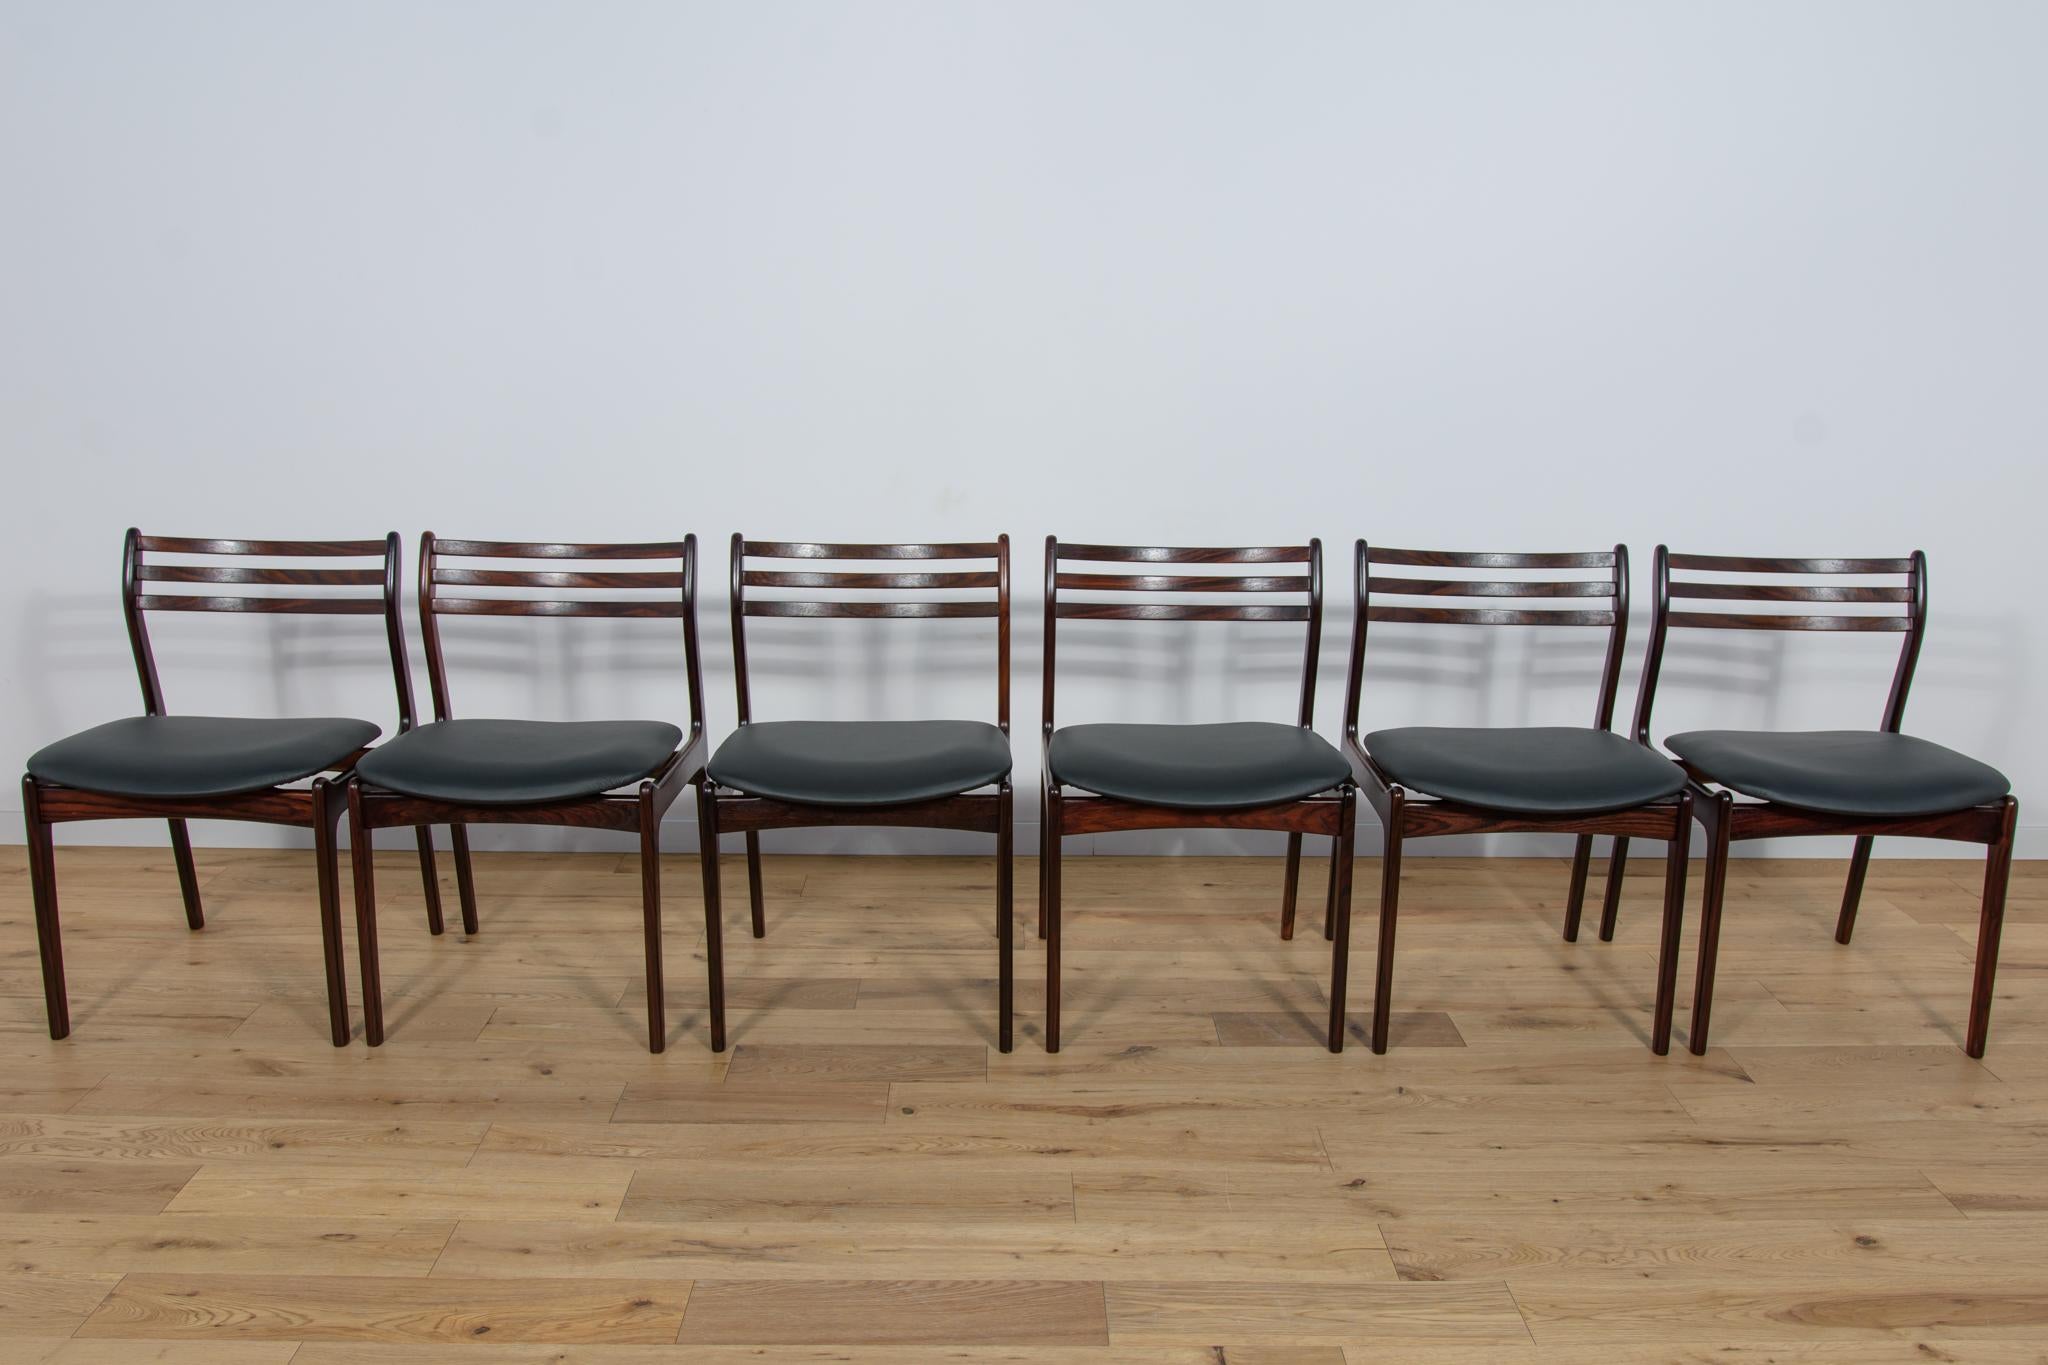 
Un ensemble de six chaises conçues par Vestervig Eriksen pour la manufacture danoise Brdr. Tromborg dans les années 1960. Des chaises à la forme magnifique et unique, témoignant de la haute qualité artisanale du design et de la fabrication,